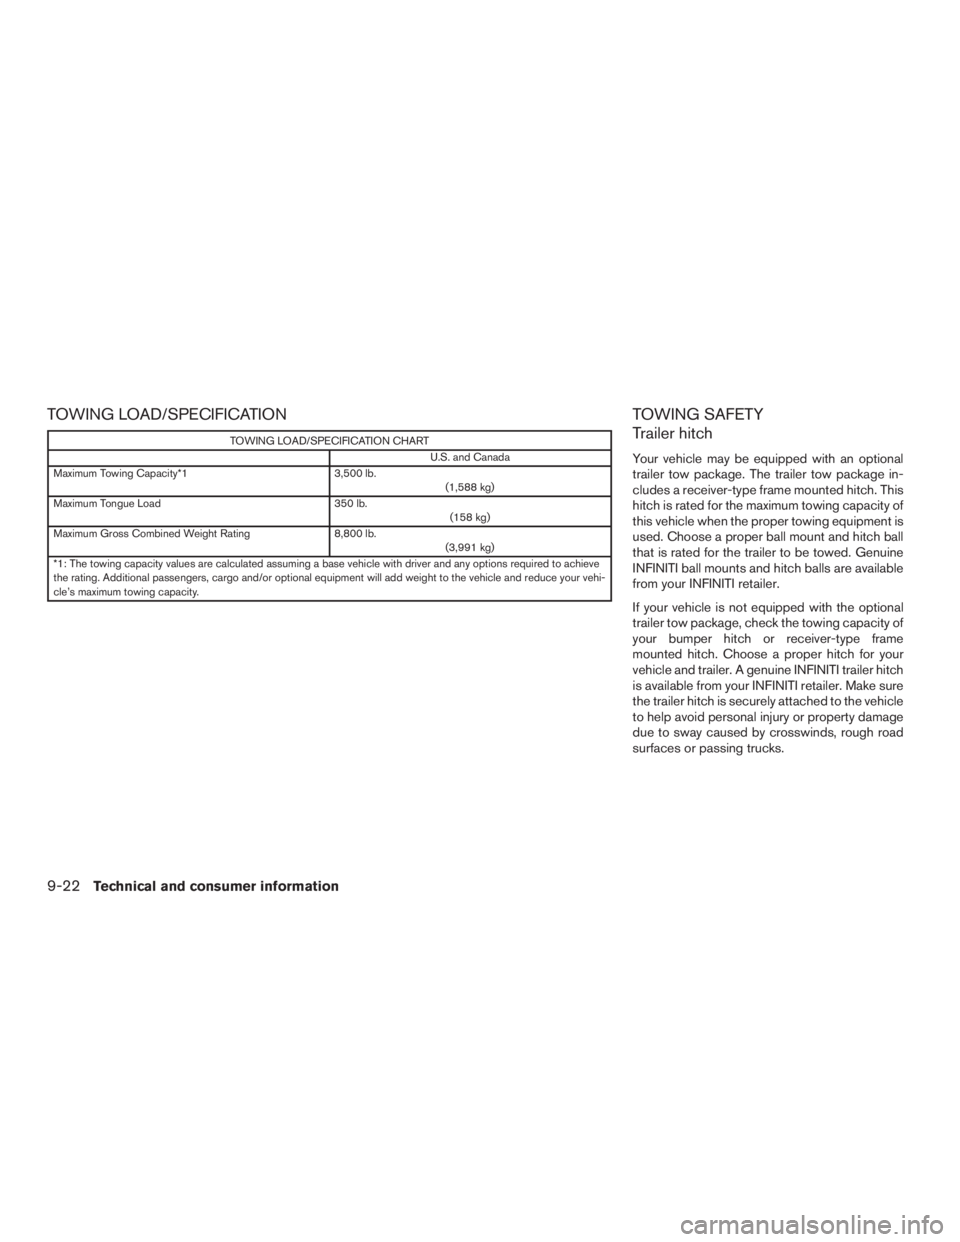 INFINITI QX60 HYBRID 2015  Owners Manual TOWING LOAD/SPECIFICATION
TOWING LOAD/SPECIFICATION CHARTU.S. and Canada
Maximum Towing Capacity*1 3,500 lb.
(1,588 kg)
Maximum Tongue Load 350 lb.
(158 kg)
Maximum Gross Combined Weight Rating 8,800 